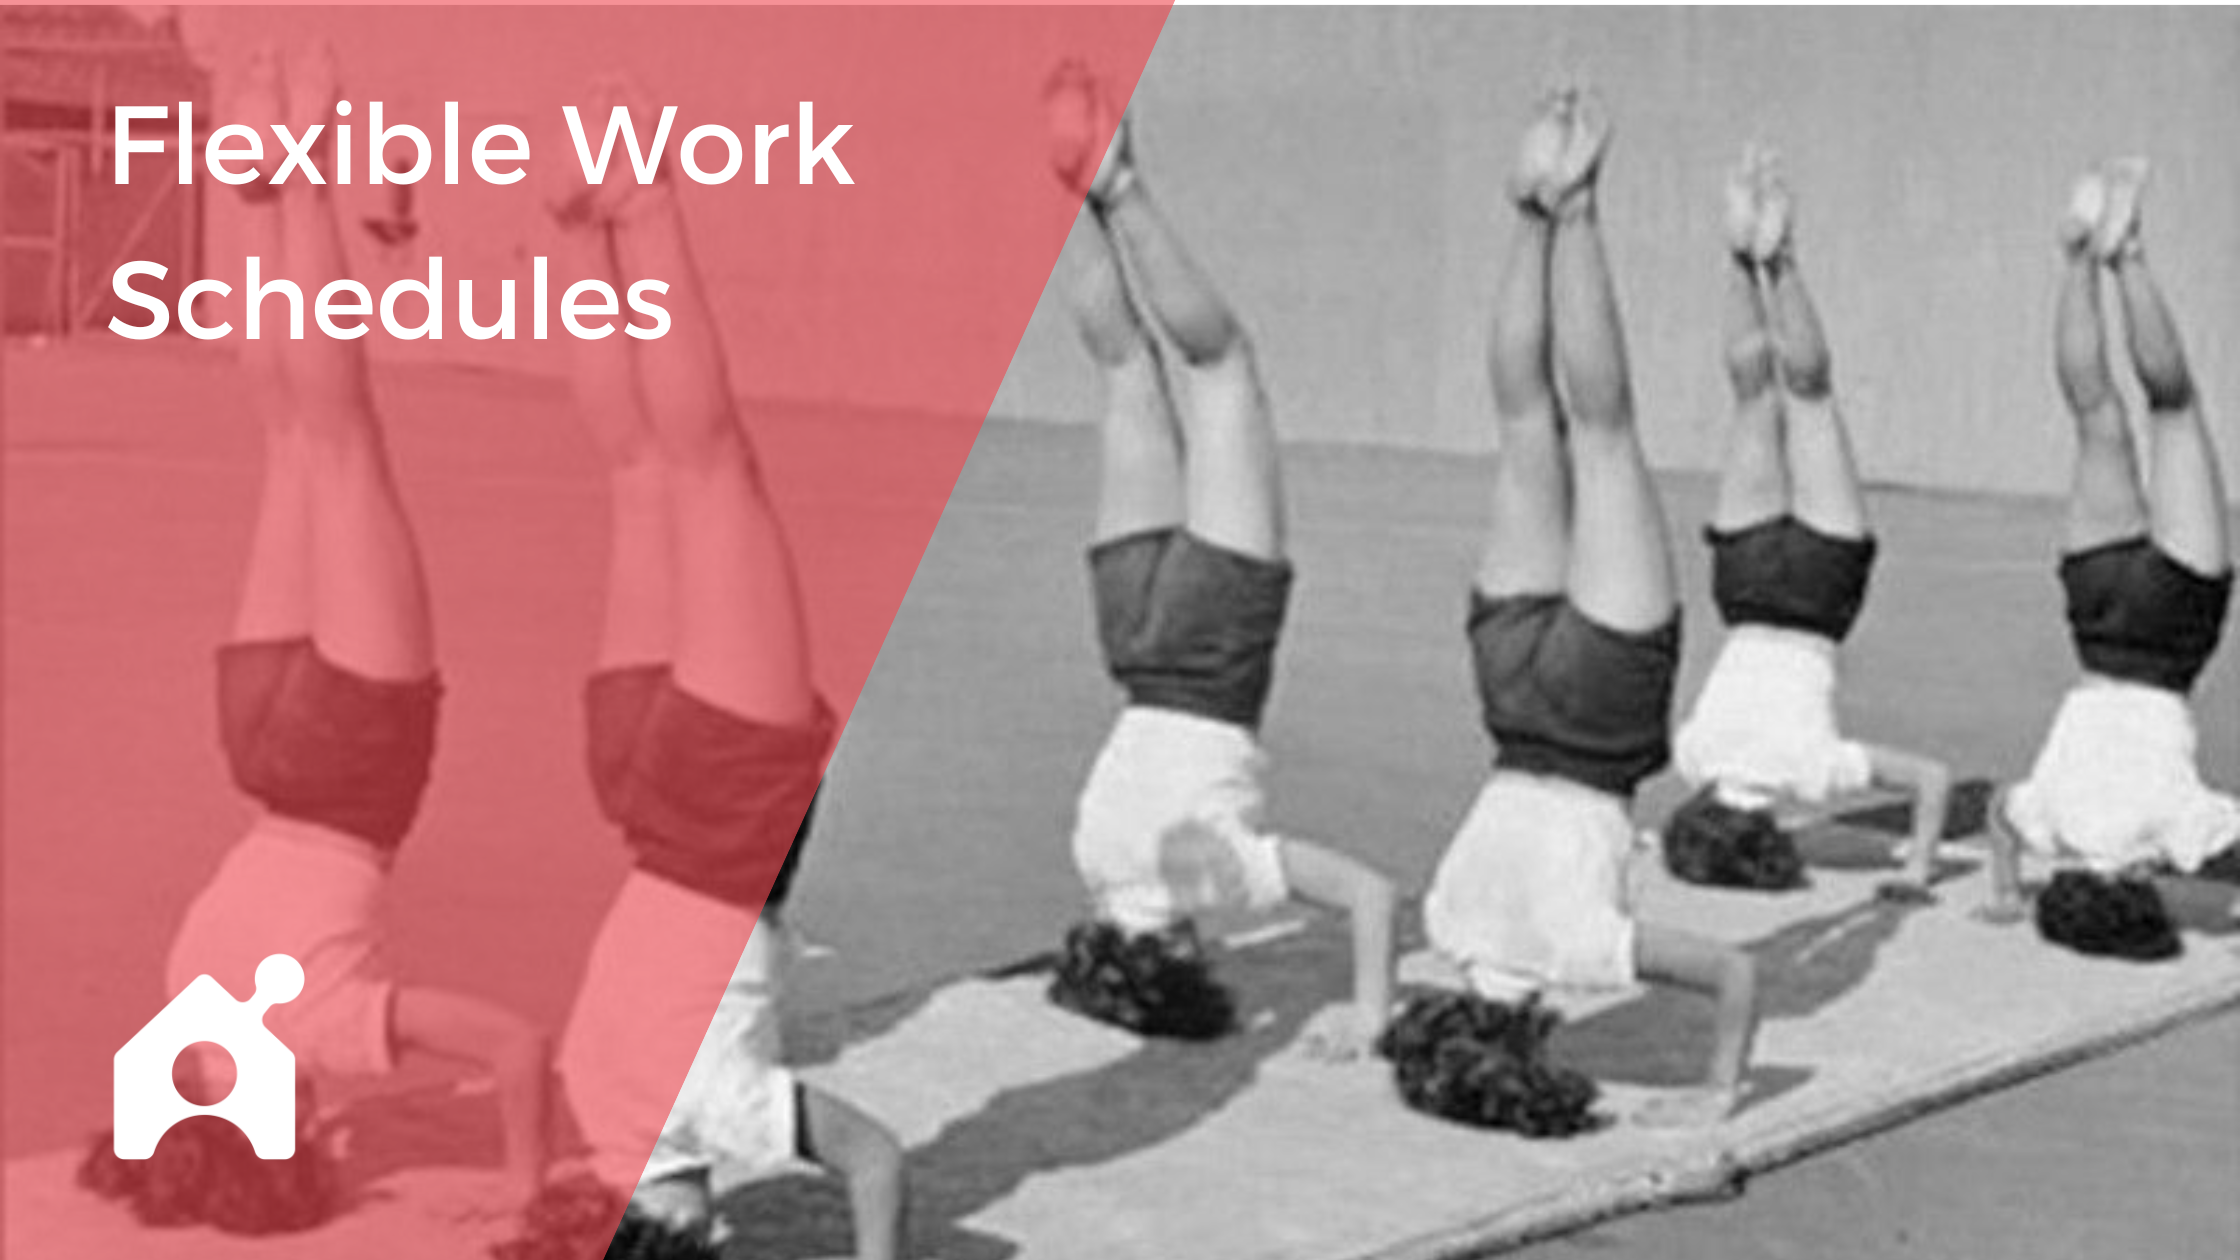 Flexible work schedules